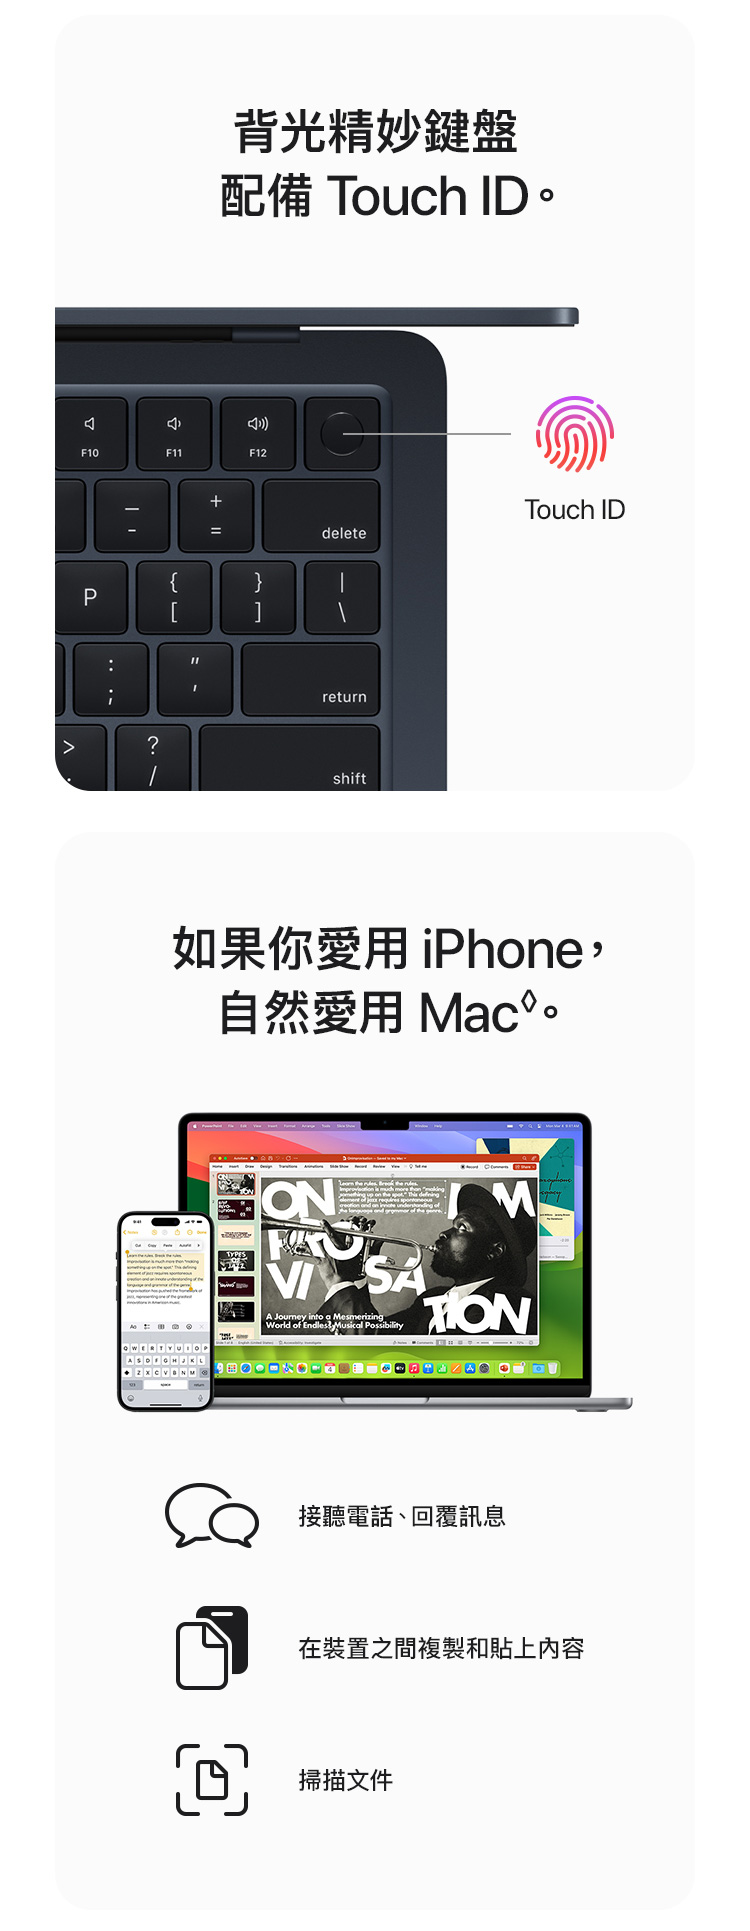   MacBook Air 13 吋及 15 吋